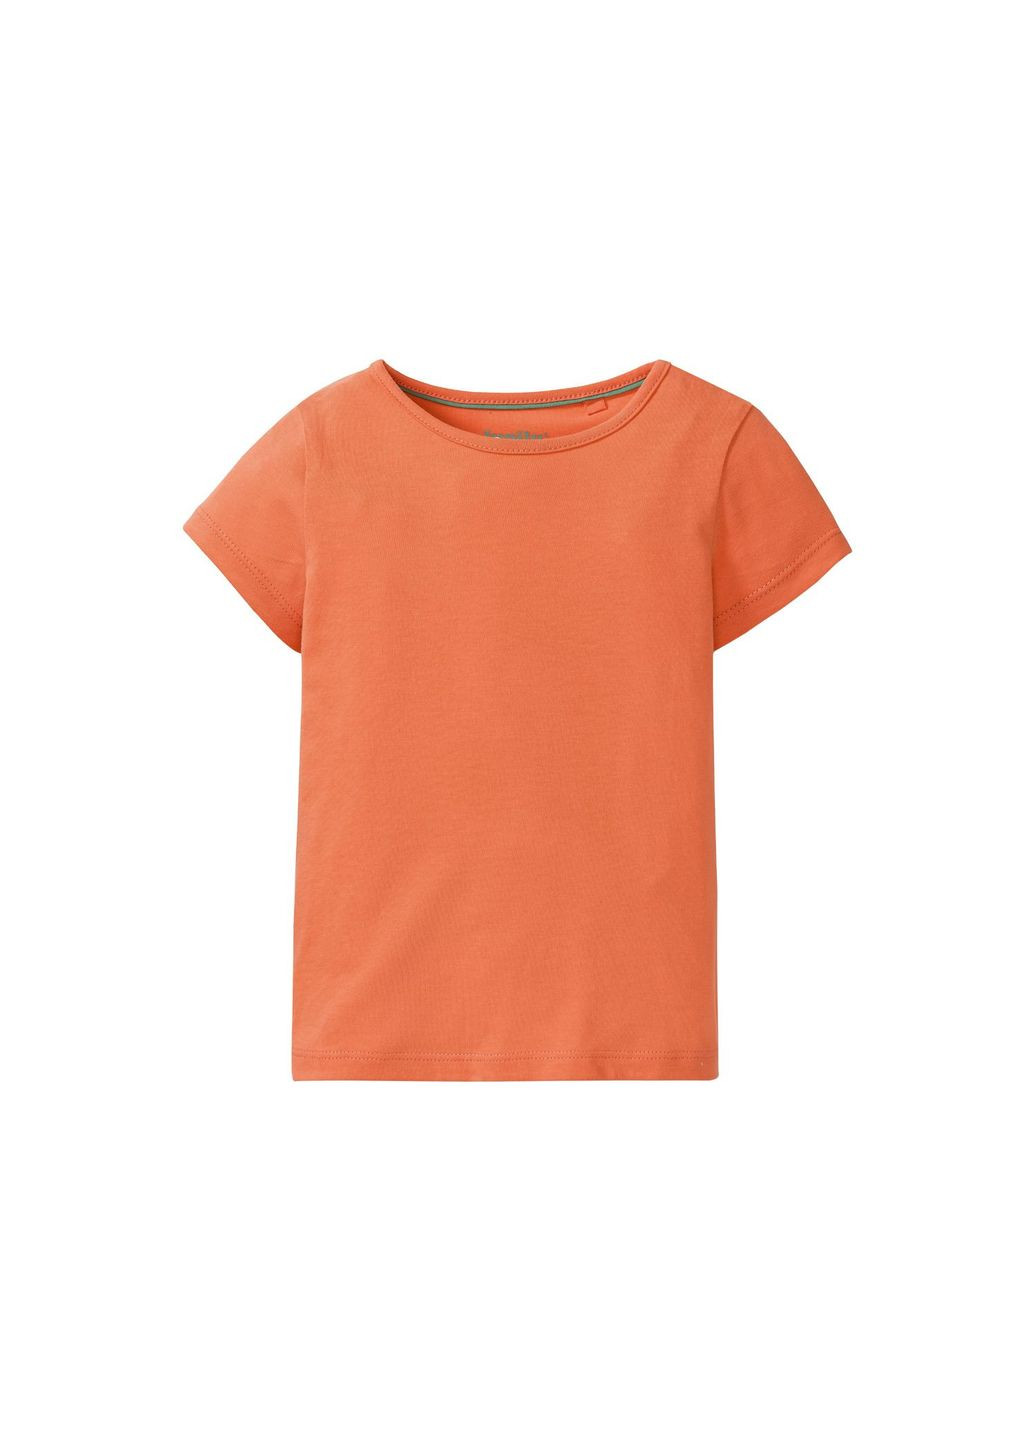 Помаранчева демісезонна футболка однотонна бавовняна для дівчинки 325954 помаранч Lupilu